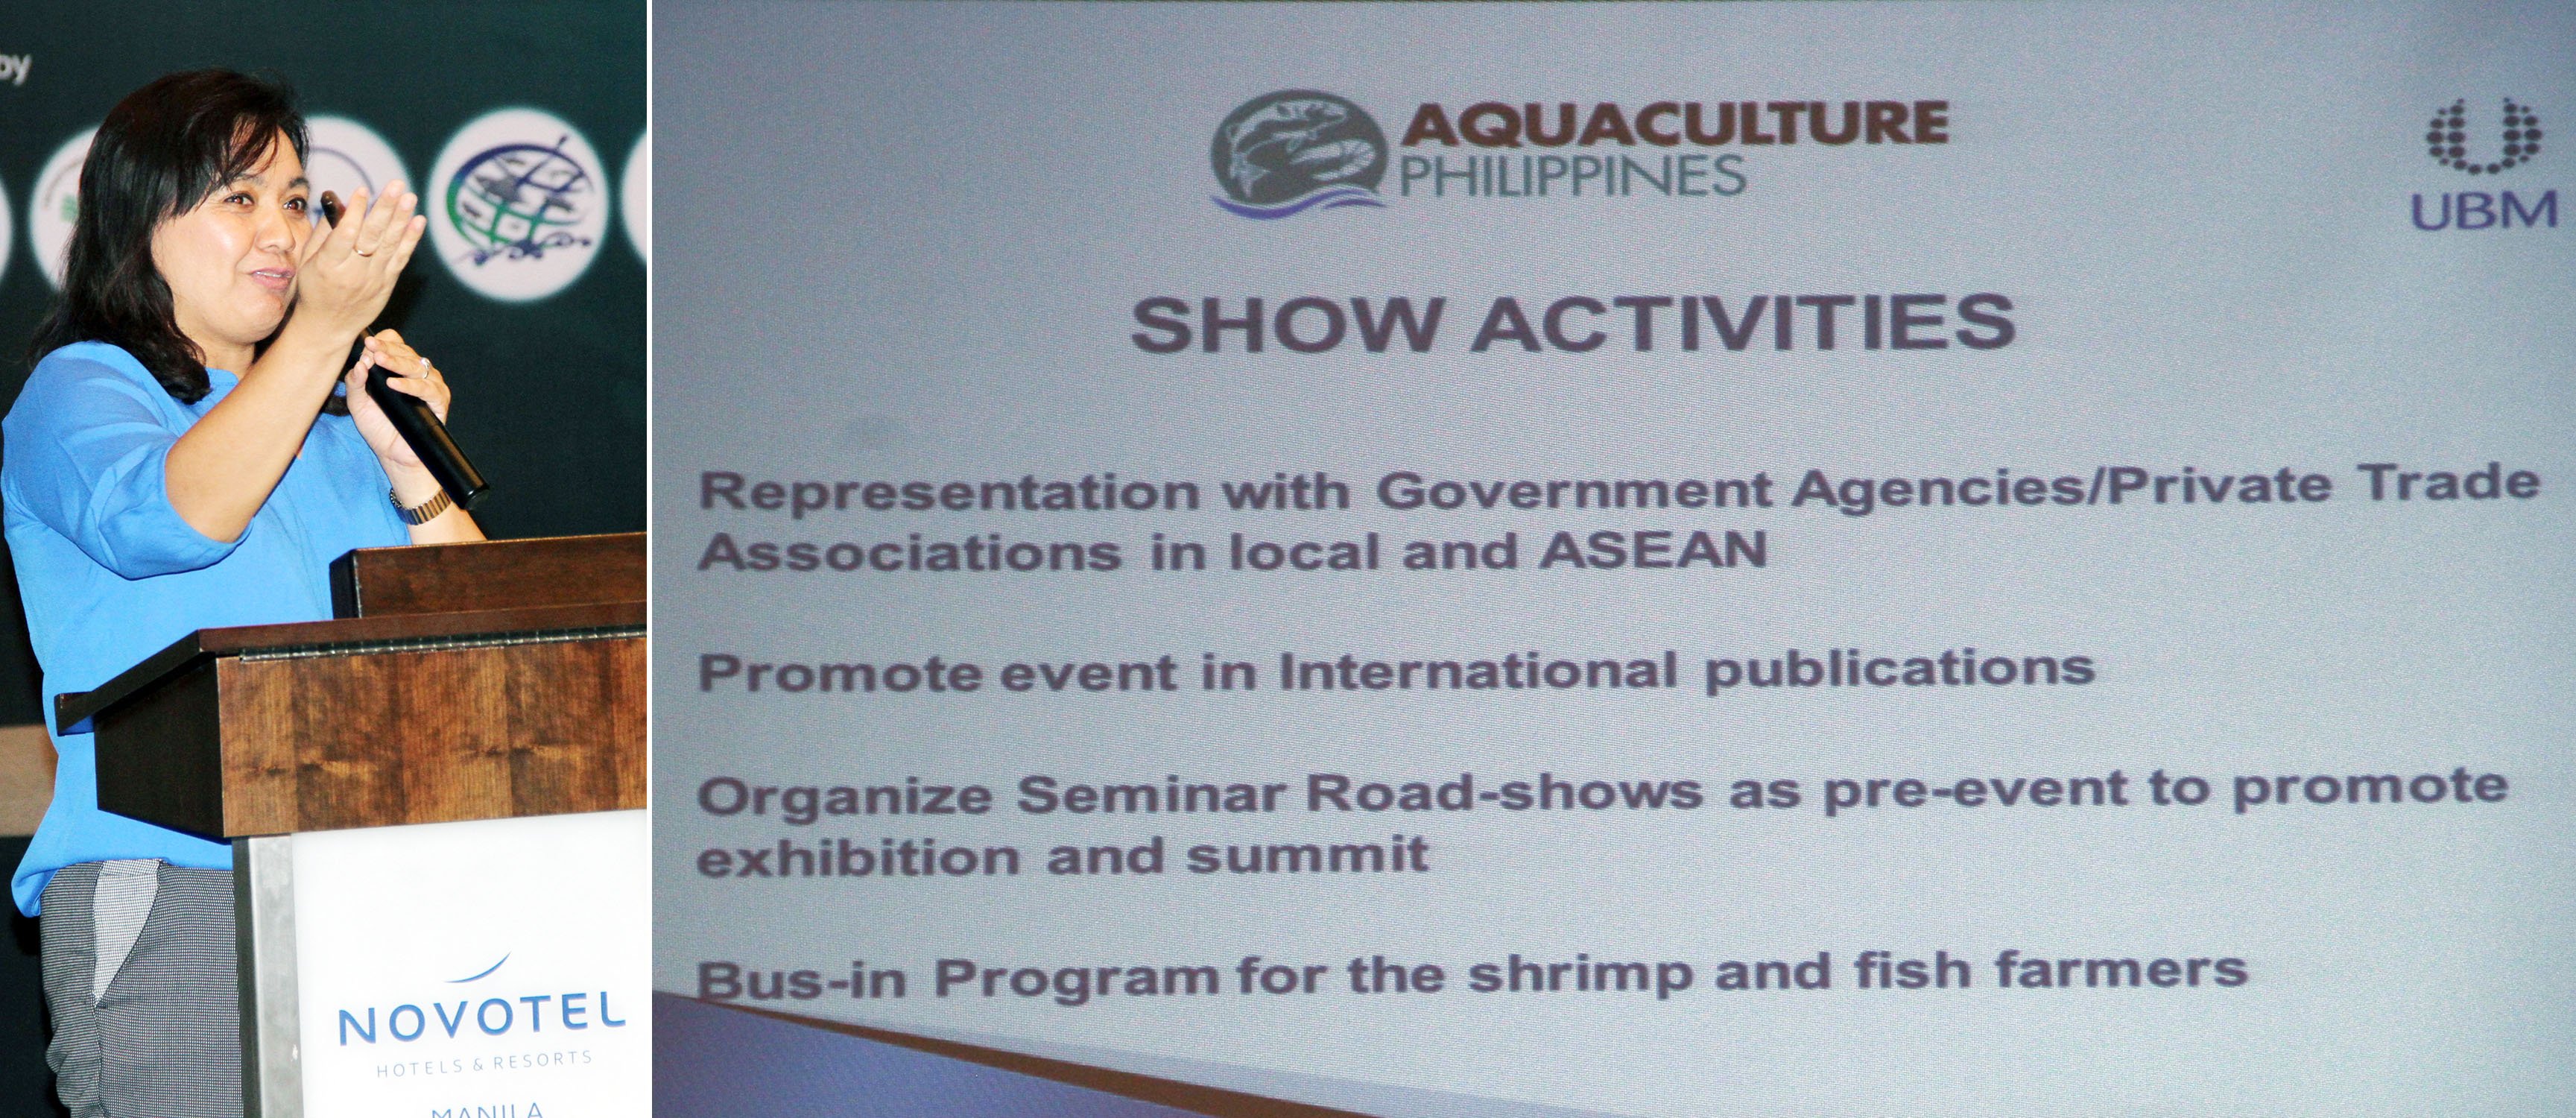 Aquaculture Philippines 2017 Expo